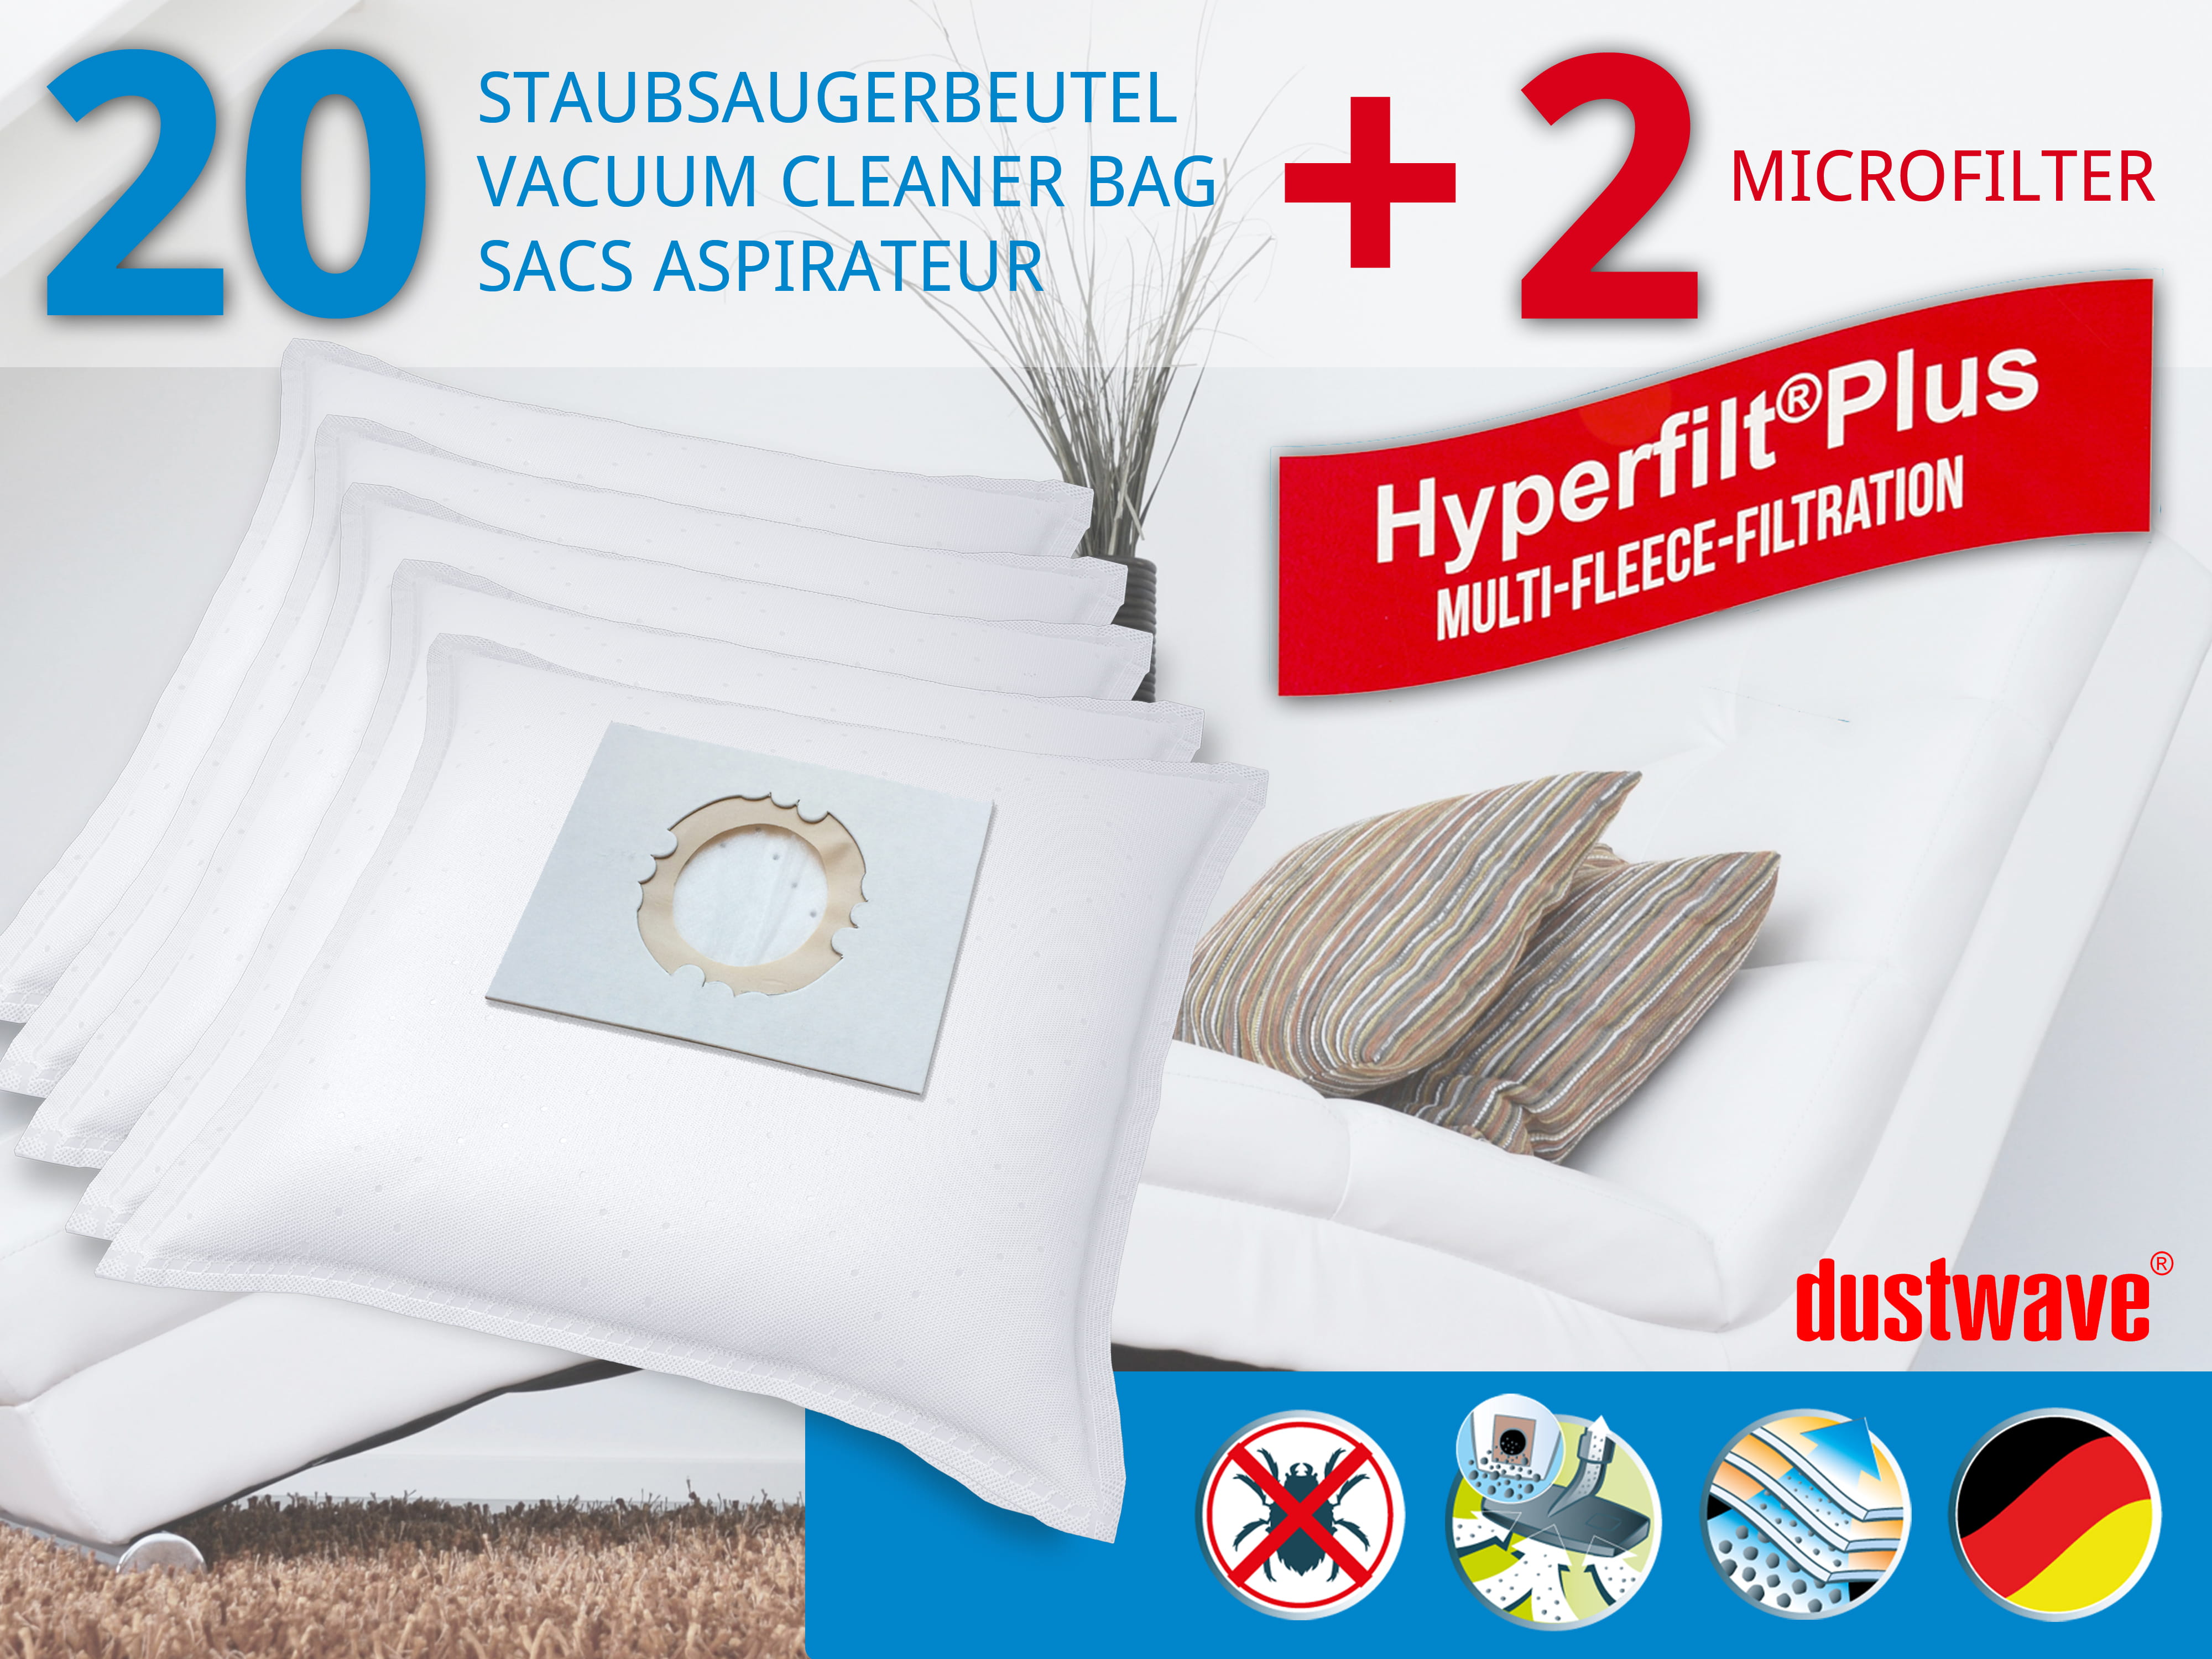 Dustwave® 20 Staubsaugerbeutel für Hoover ATHYSS - hocheffizient, mehrlagiges Mikrovlies mit Hygieneverschluss - Made in Germany